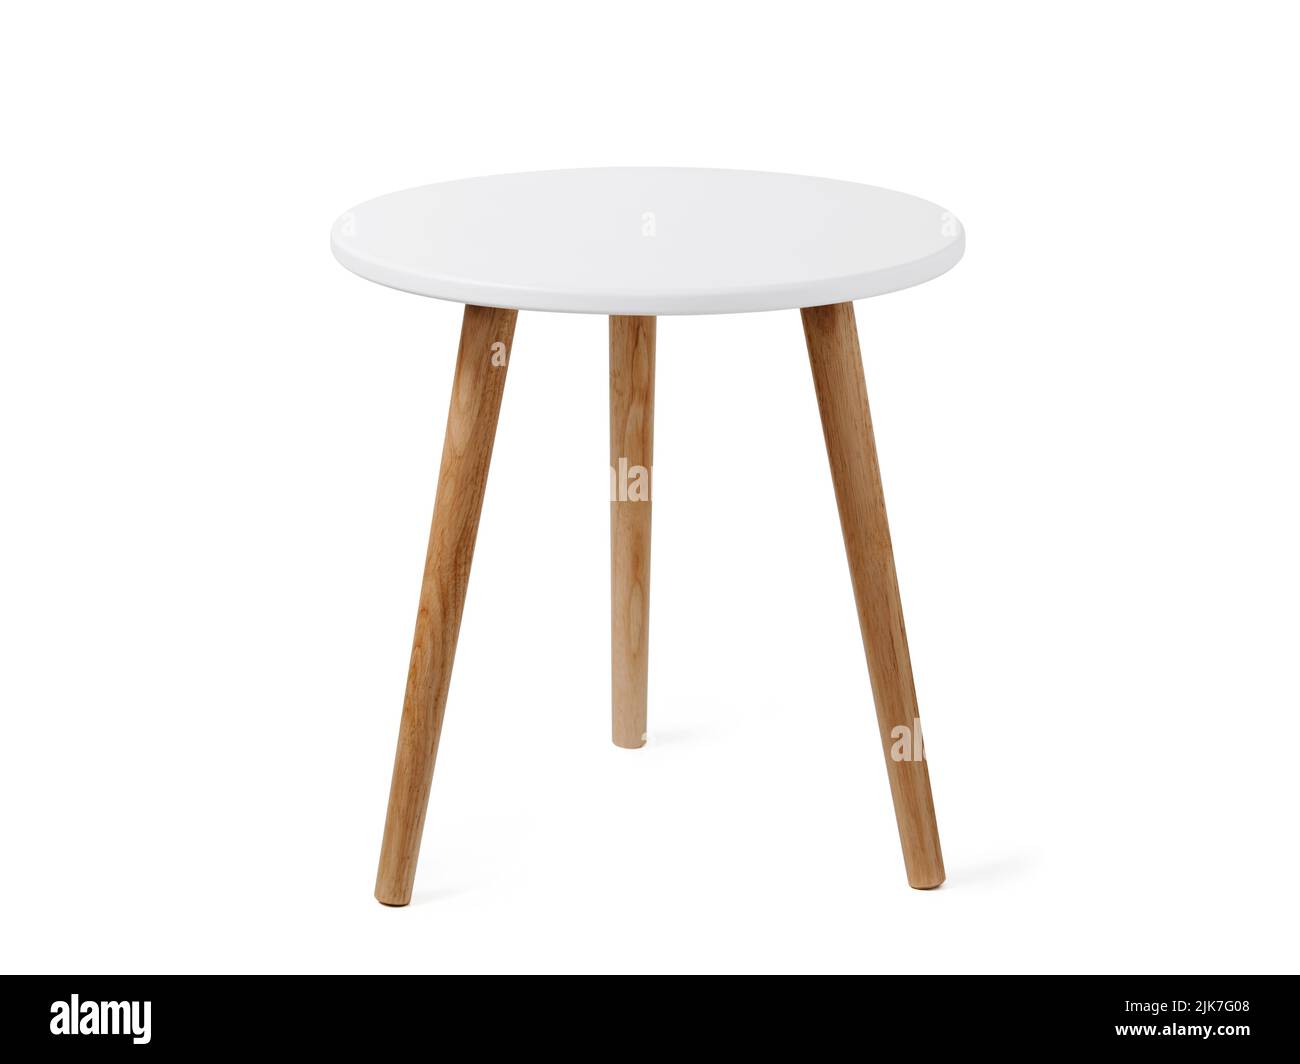 Mesa de café redonda o mesa final de estilo escandinavo, aislada sobre fondo blanco con ruta de corte. Pequeña mesa redonda blanca con 3 patas de madera sobre fondo blanco. Foto de stock